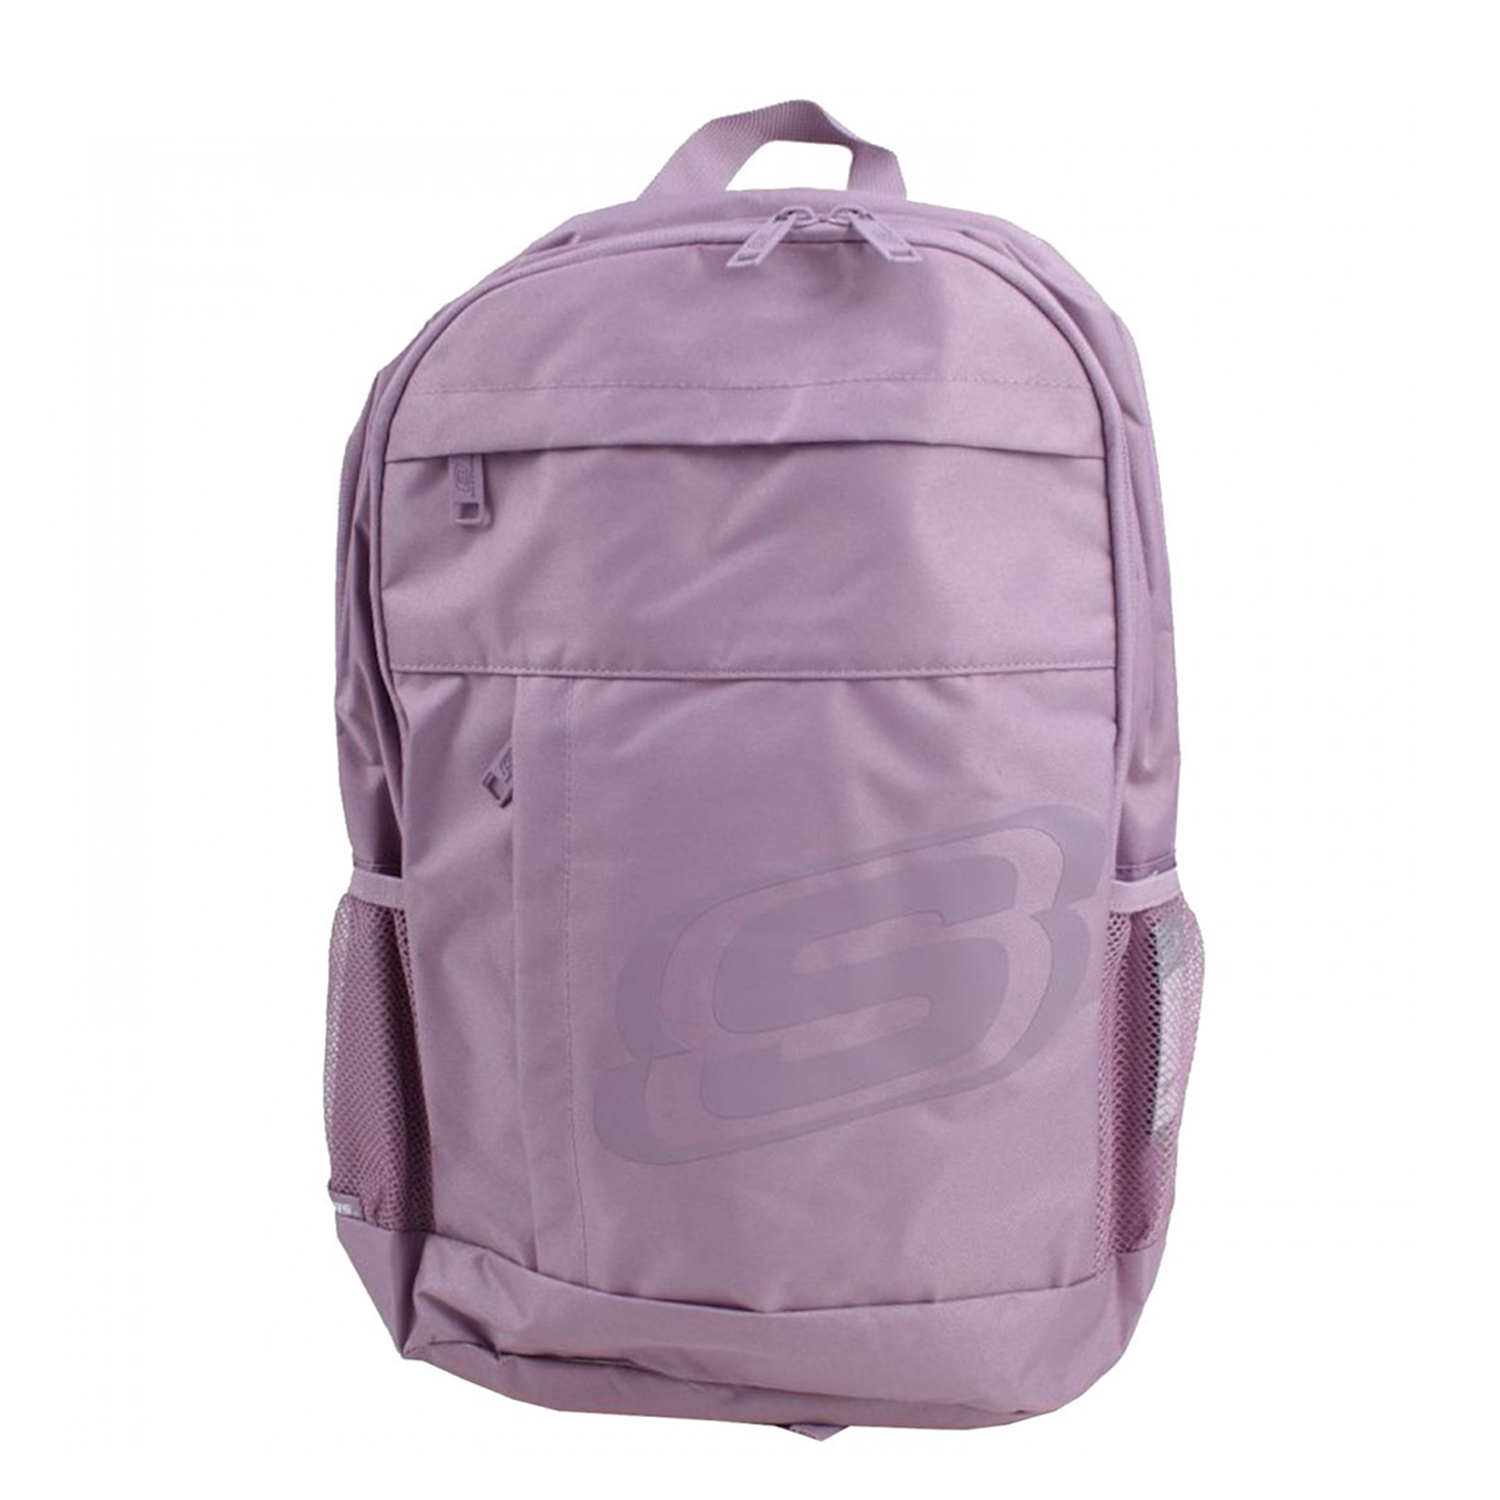 Central backpack